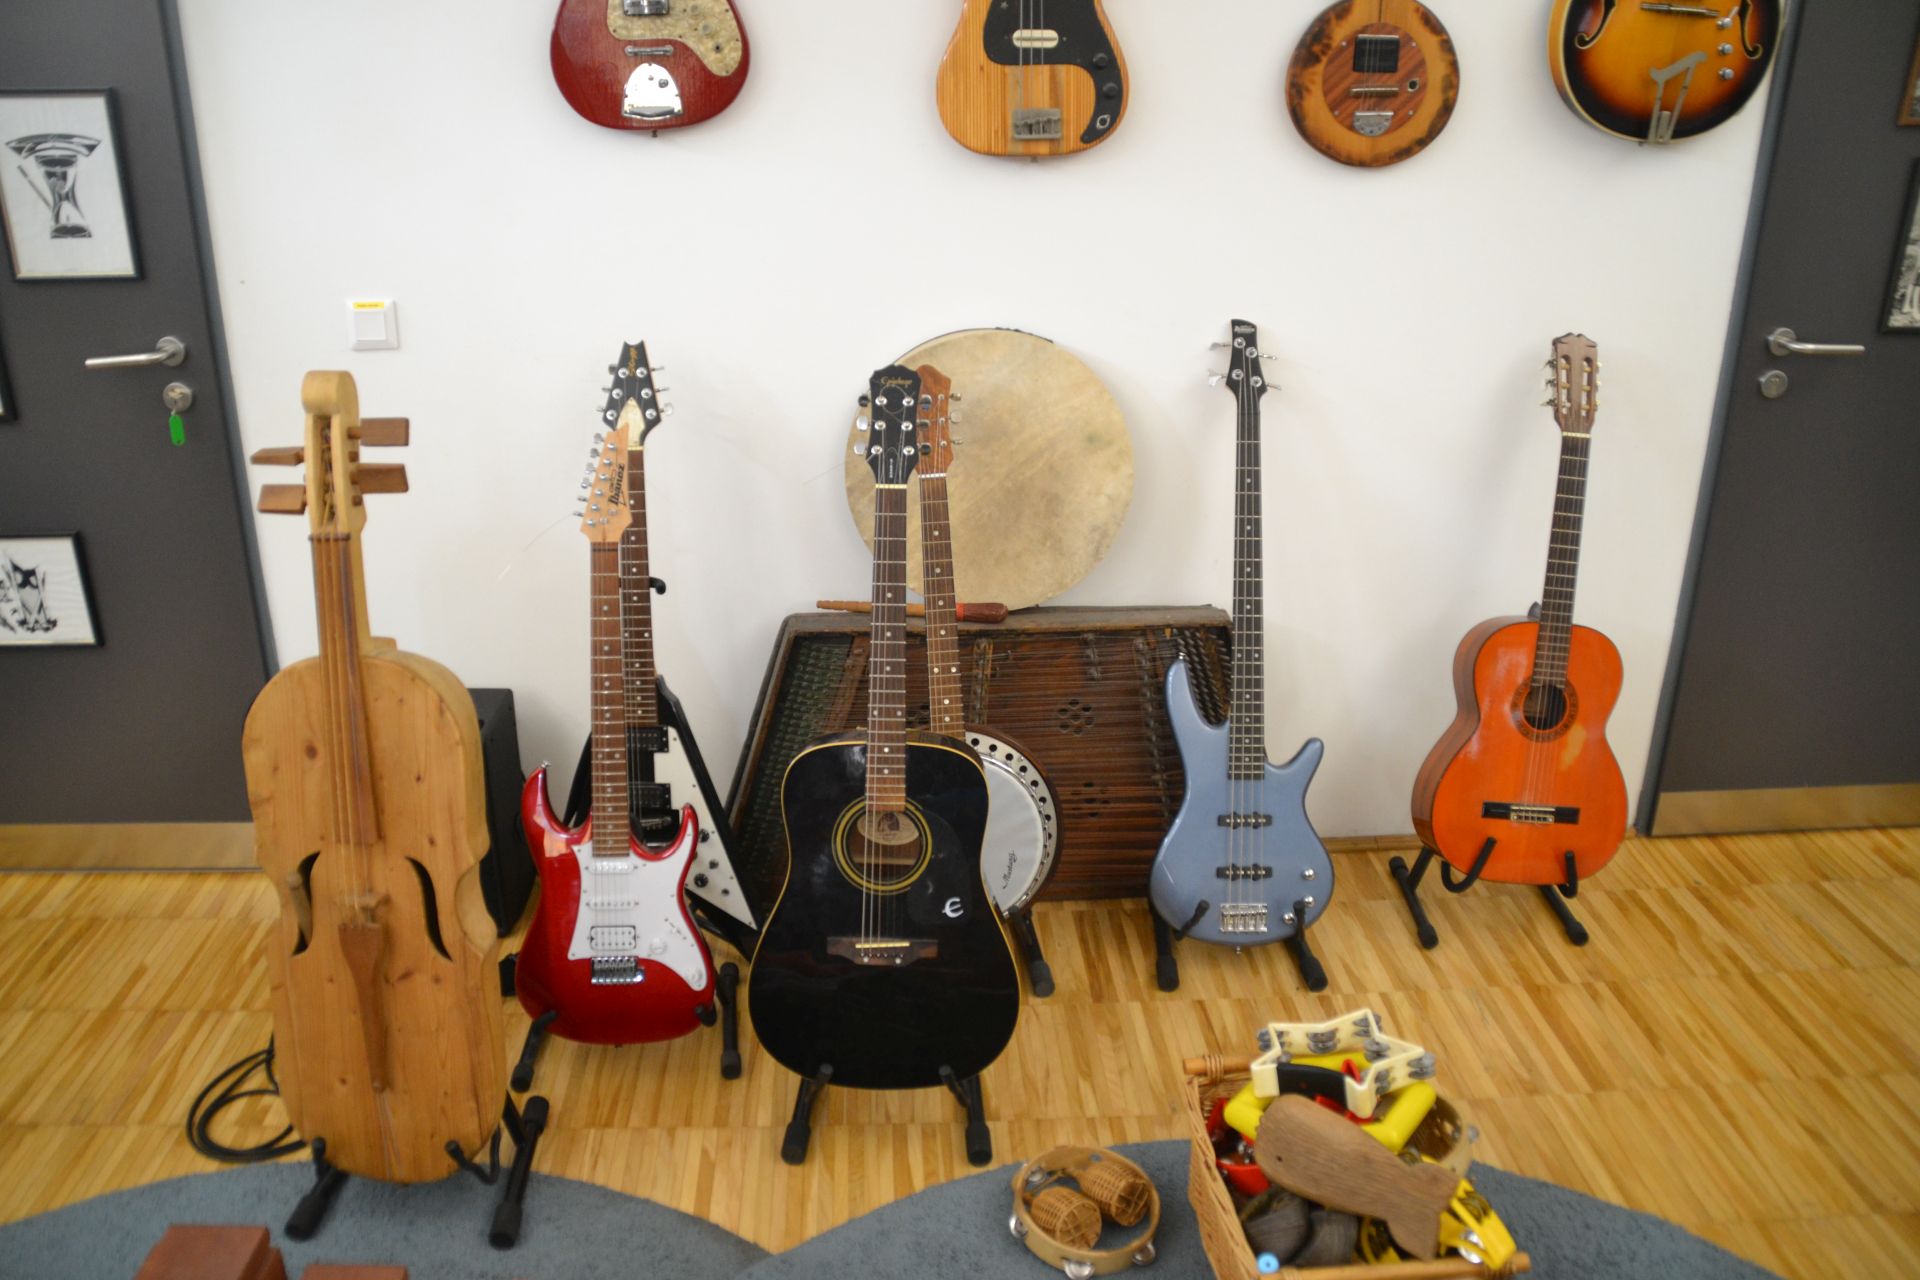 leskowsky hangszergyűjtemény kecskemét, múzeum, rákóczi utca